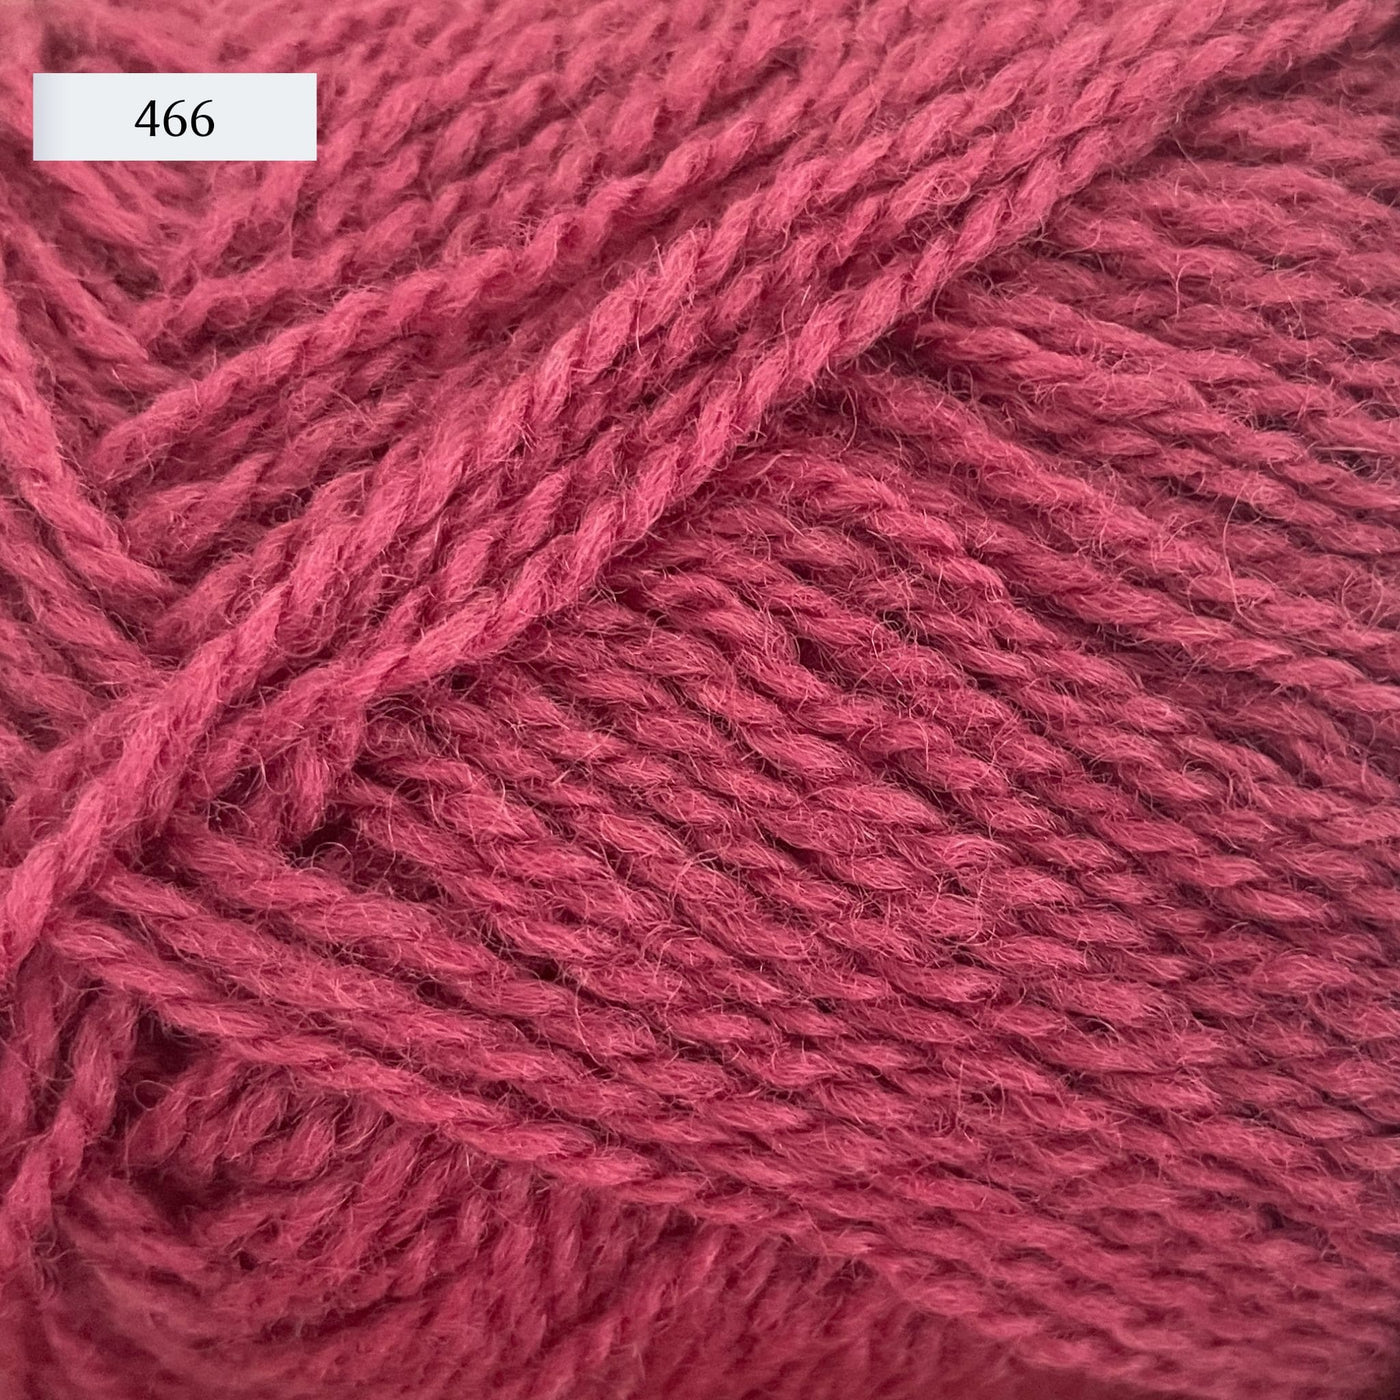 Rauma Finullgarn, a fingering/sport weight yarn, in color 466, a dusty raspberry pink